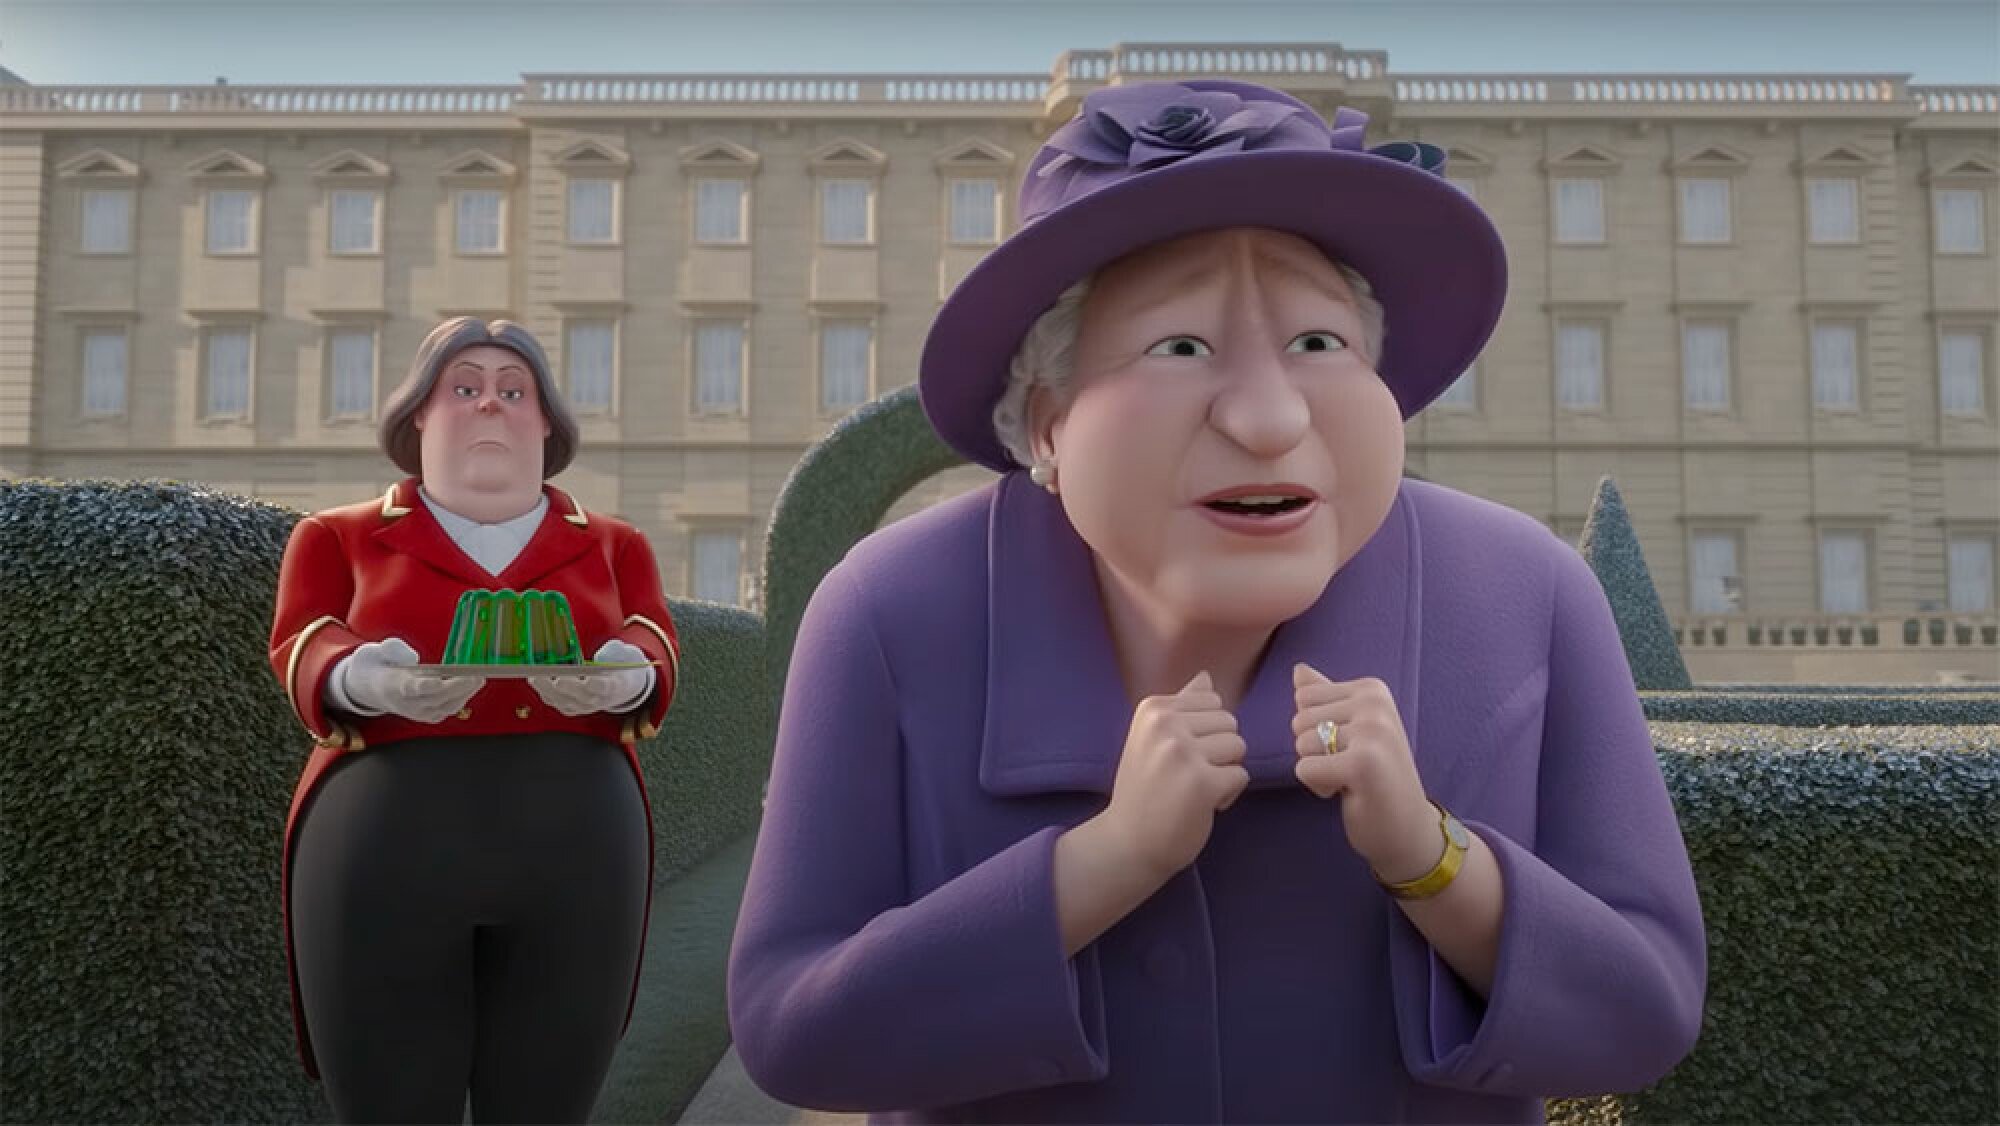 An animated version of Queen Elizabeth II